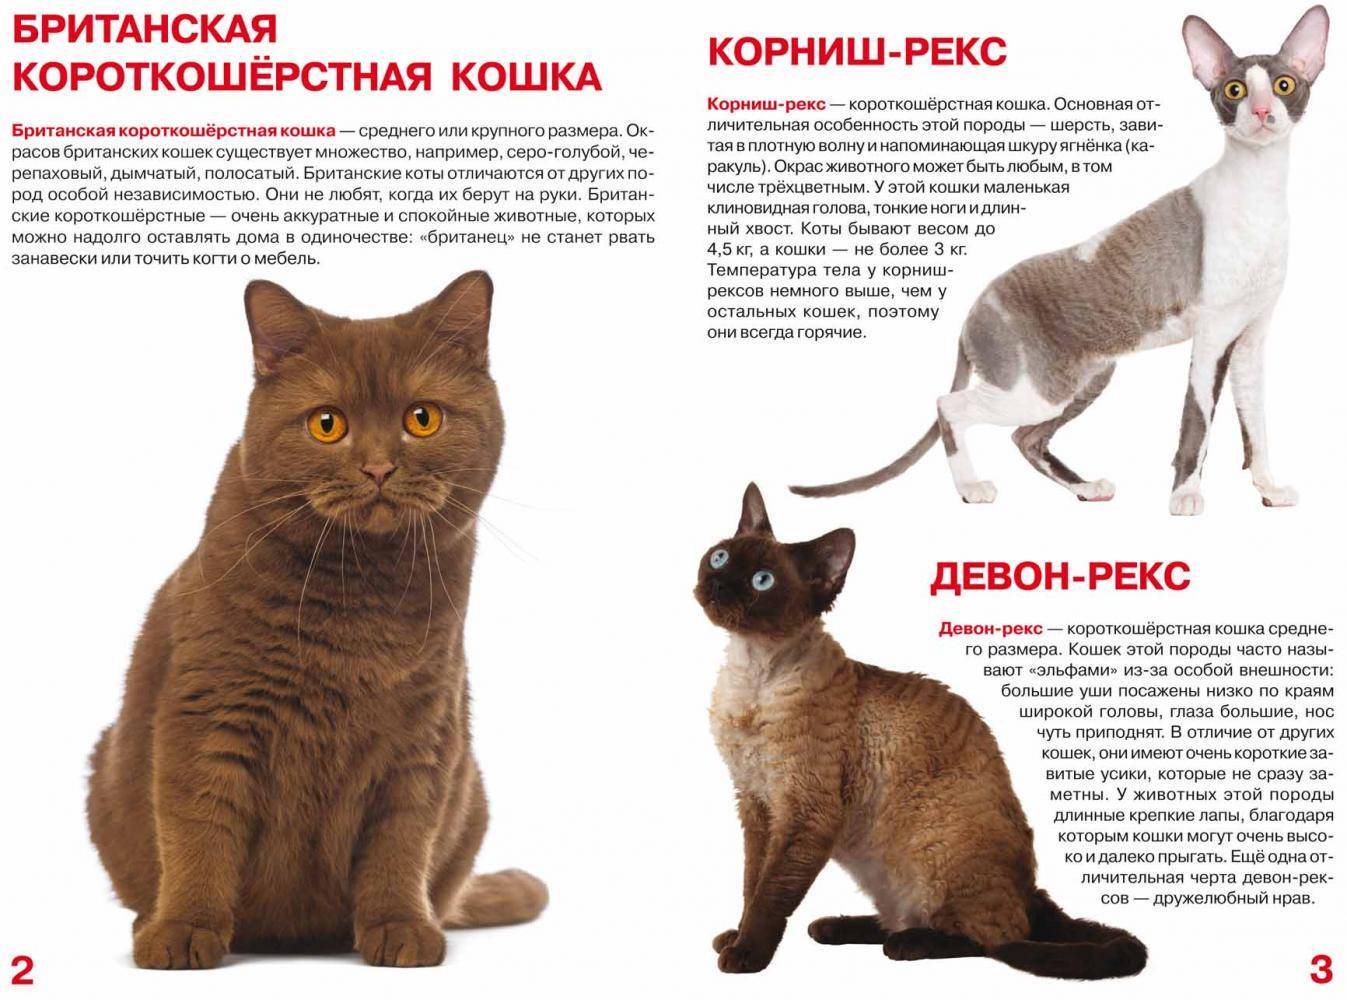 Гладкошерстные кошки | список пород с фото и названиями